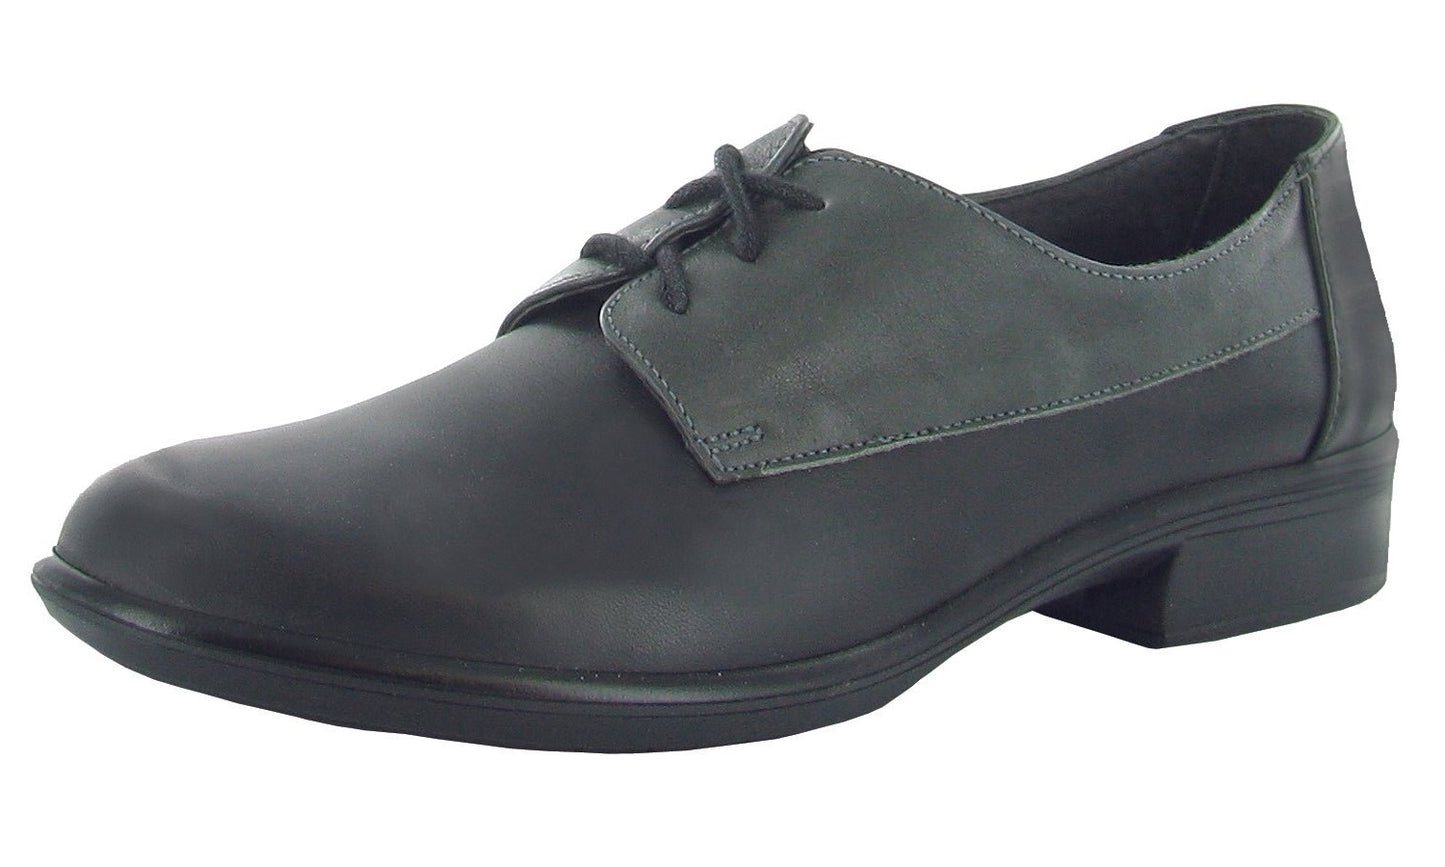 Kedma | Jet Black Leather/Tin Gray Leather/Black Madras Leather - Shoe - Naot